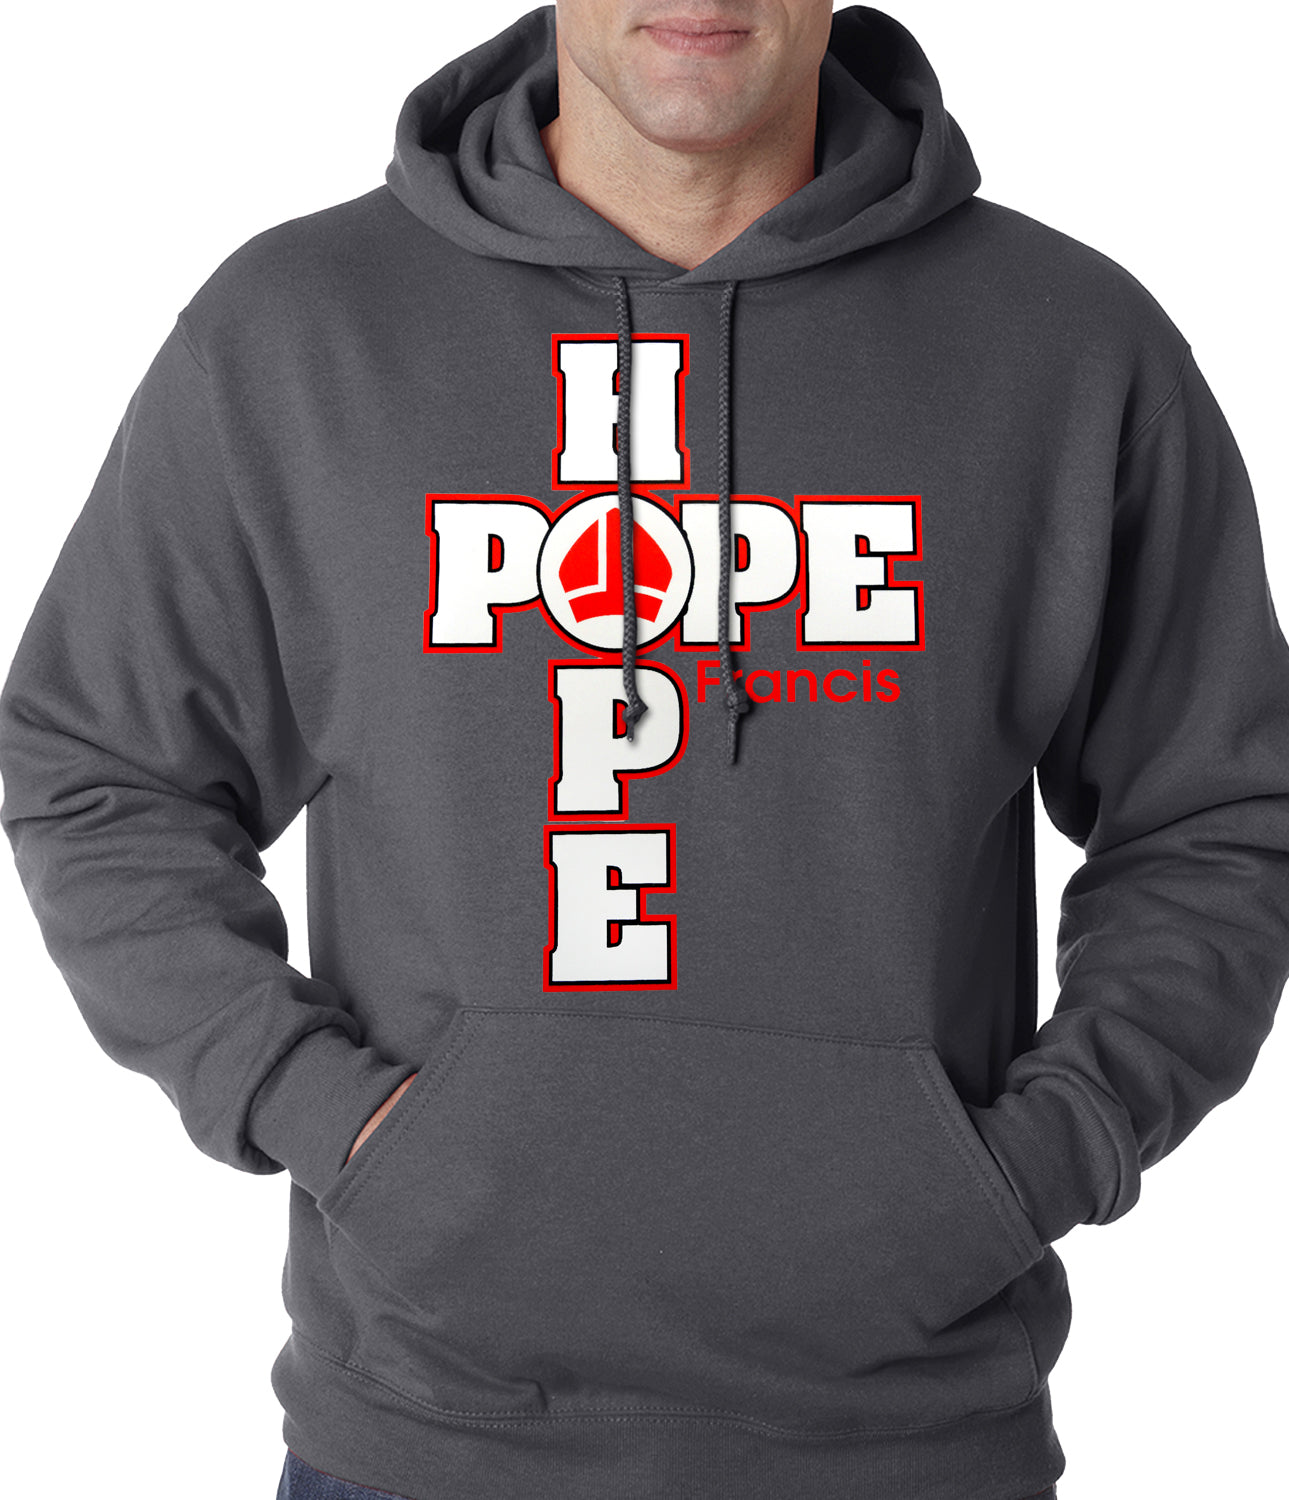 Pope Francis - Hope Adult Hoodie